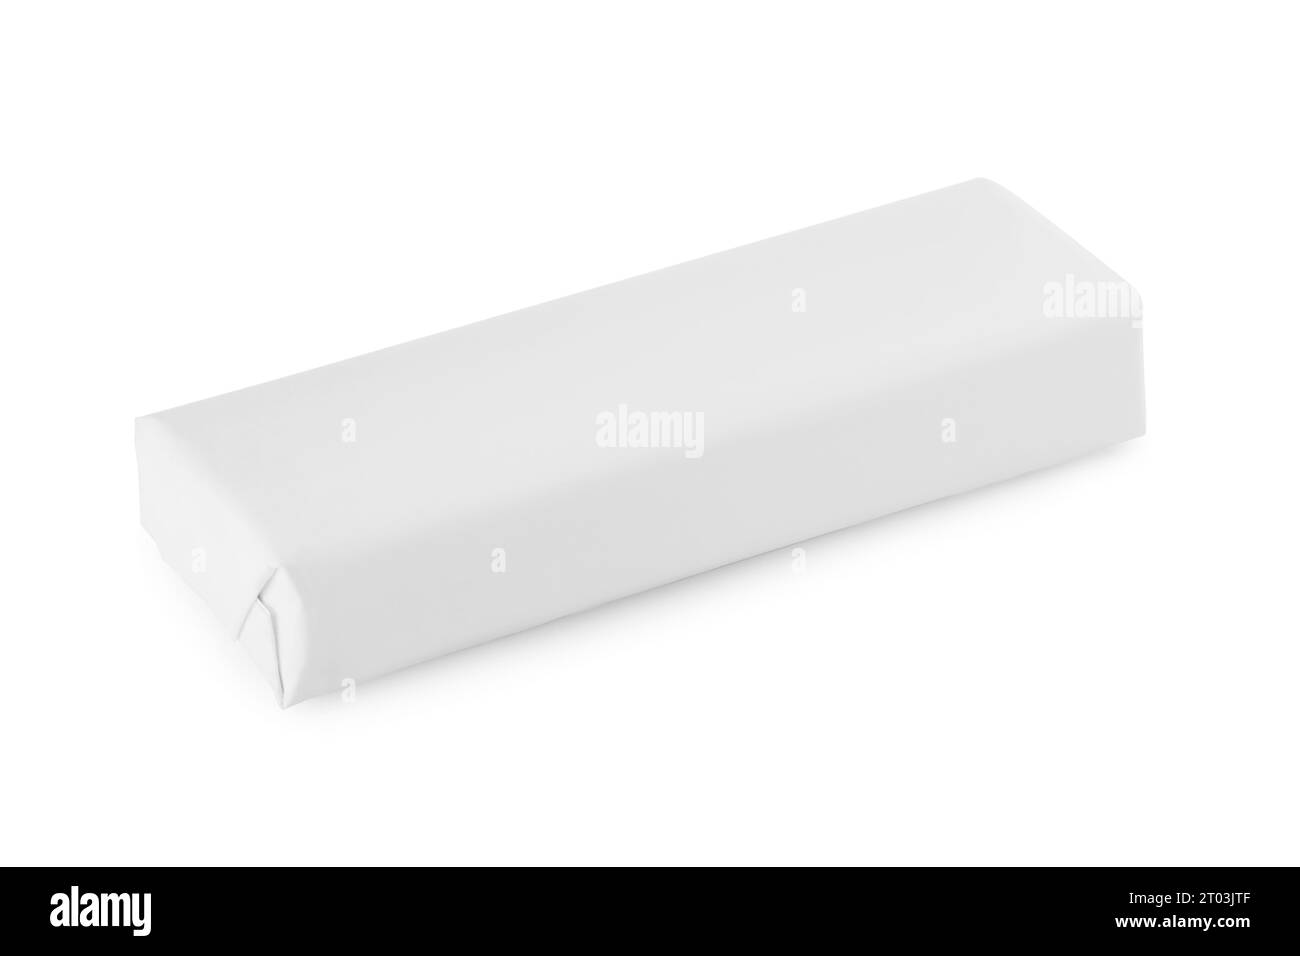 Paquet de chewing-gums isolé sur blanc Banque D'Images